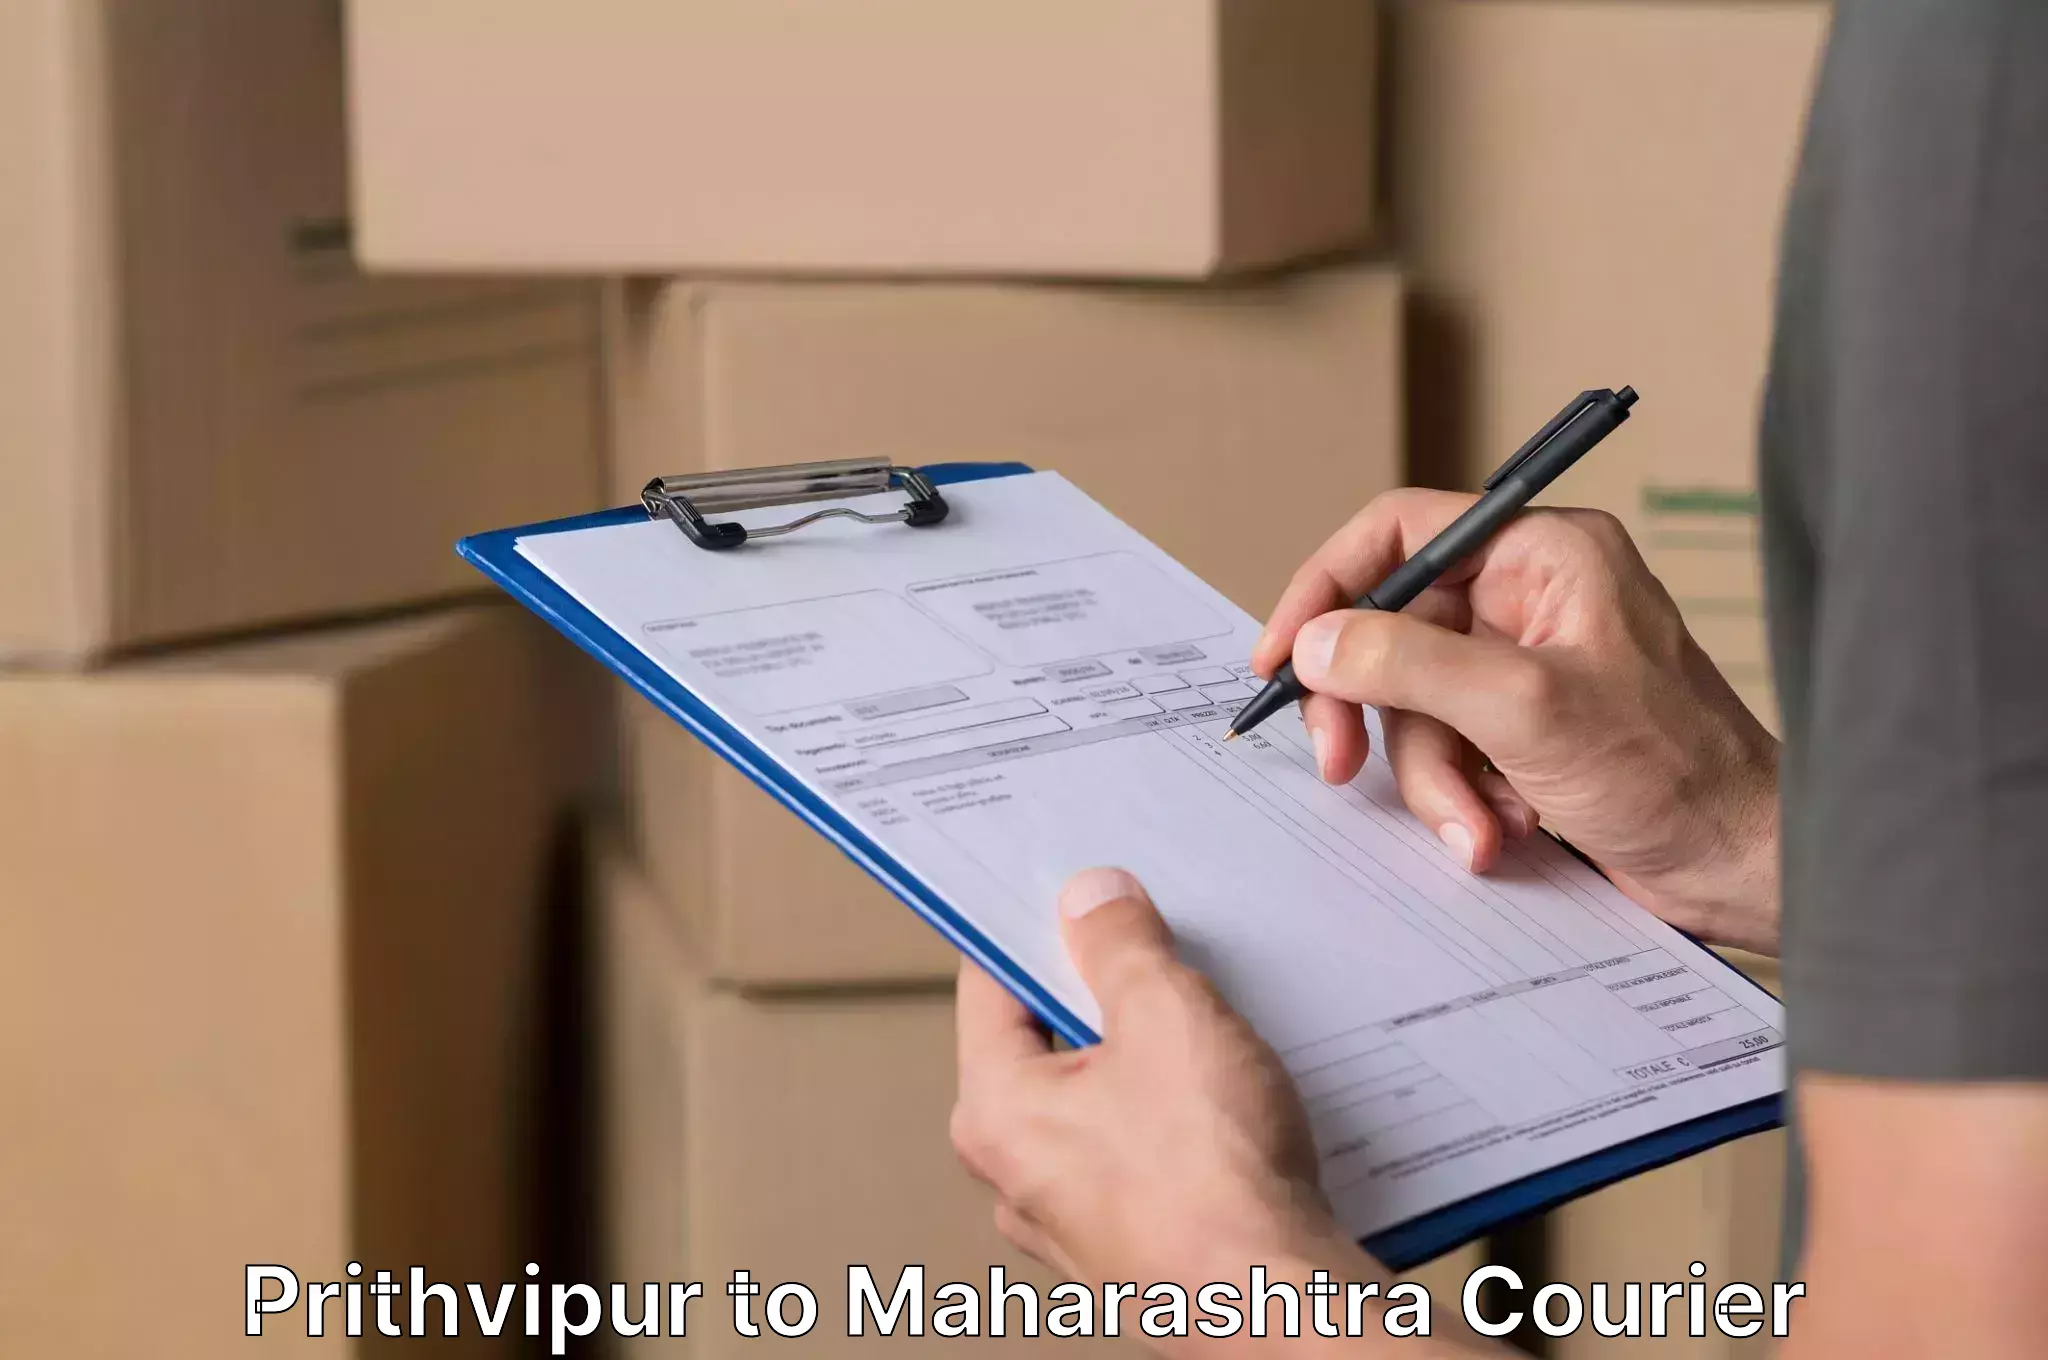 Home furniture moving Prithvipur to Maharashtra